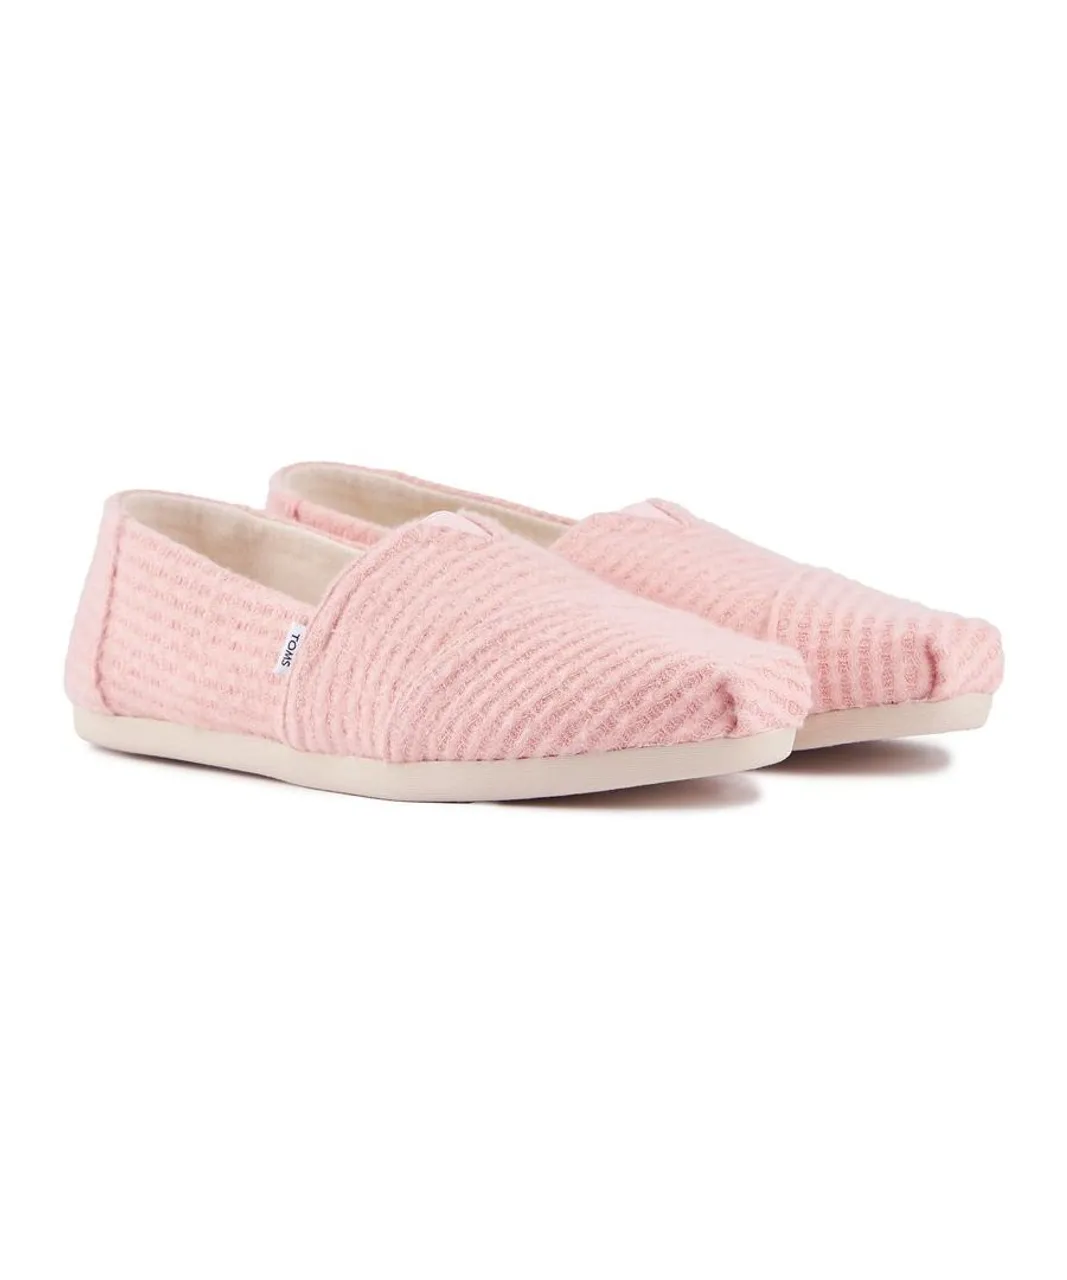 Toms Womens Alpargata Shoes - Pink